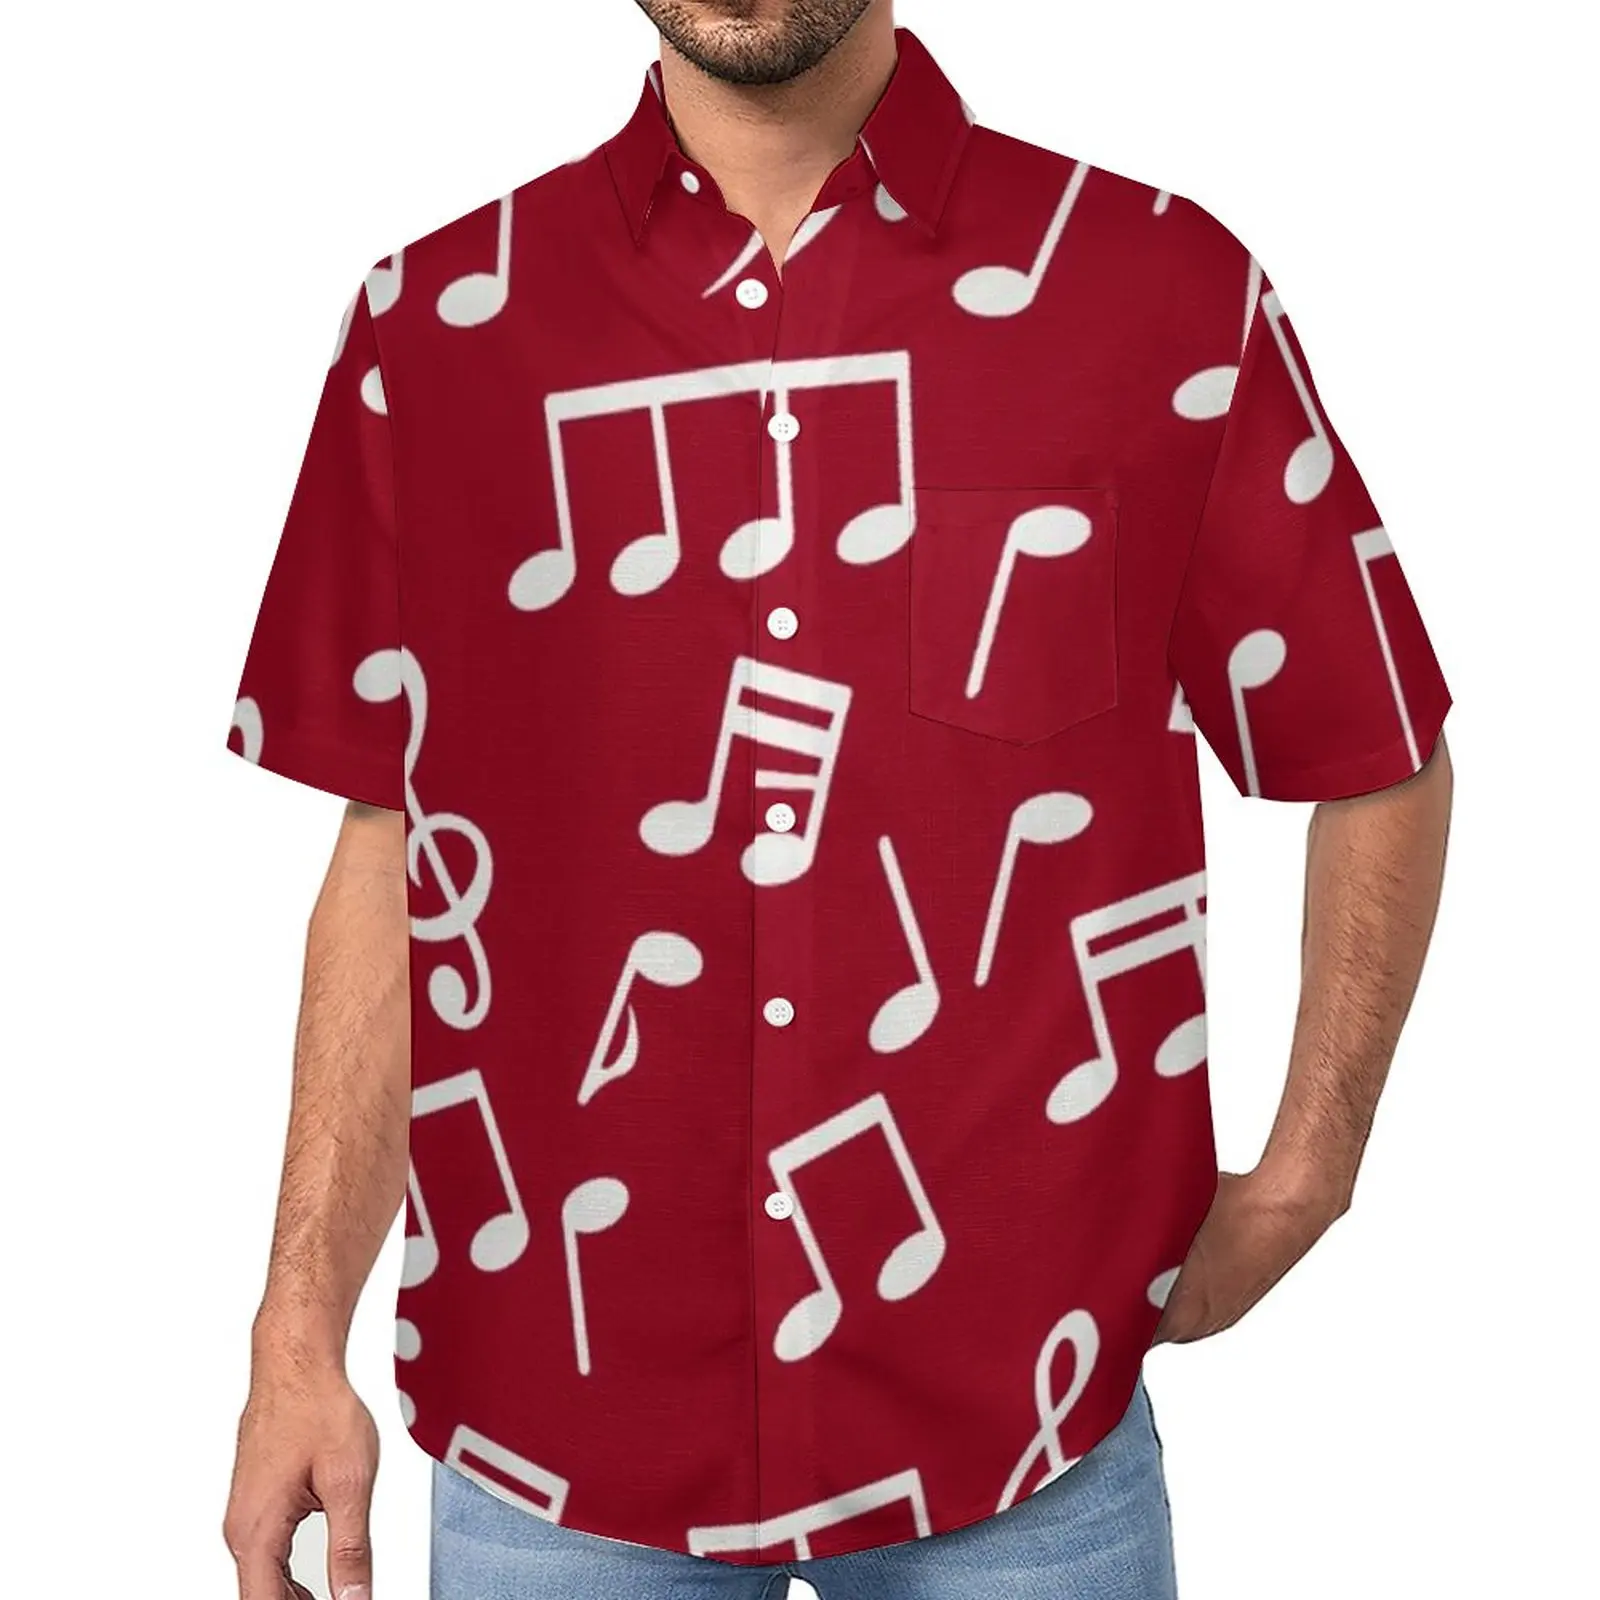 

Белая Повседневная рубашка для музыкальных заметок, Пляжная Свободная рубашка для музыкантов, летние эстетические блузки с коротким рукавом и графическим принтом, Одежда большого размера